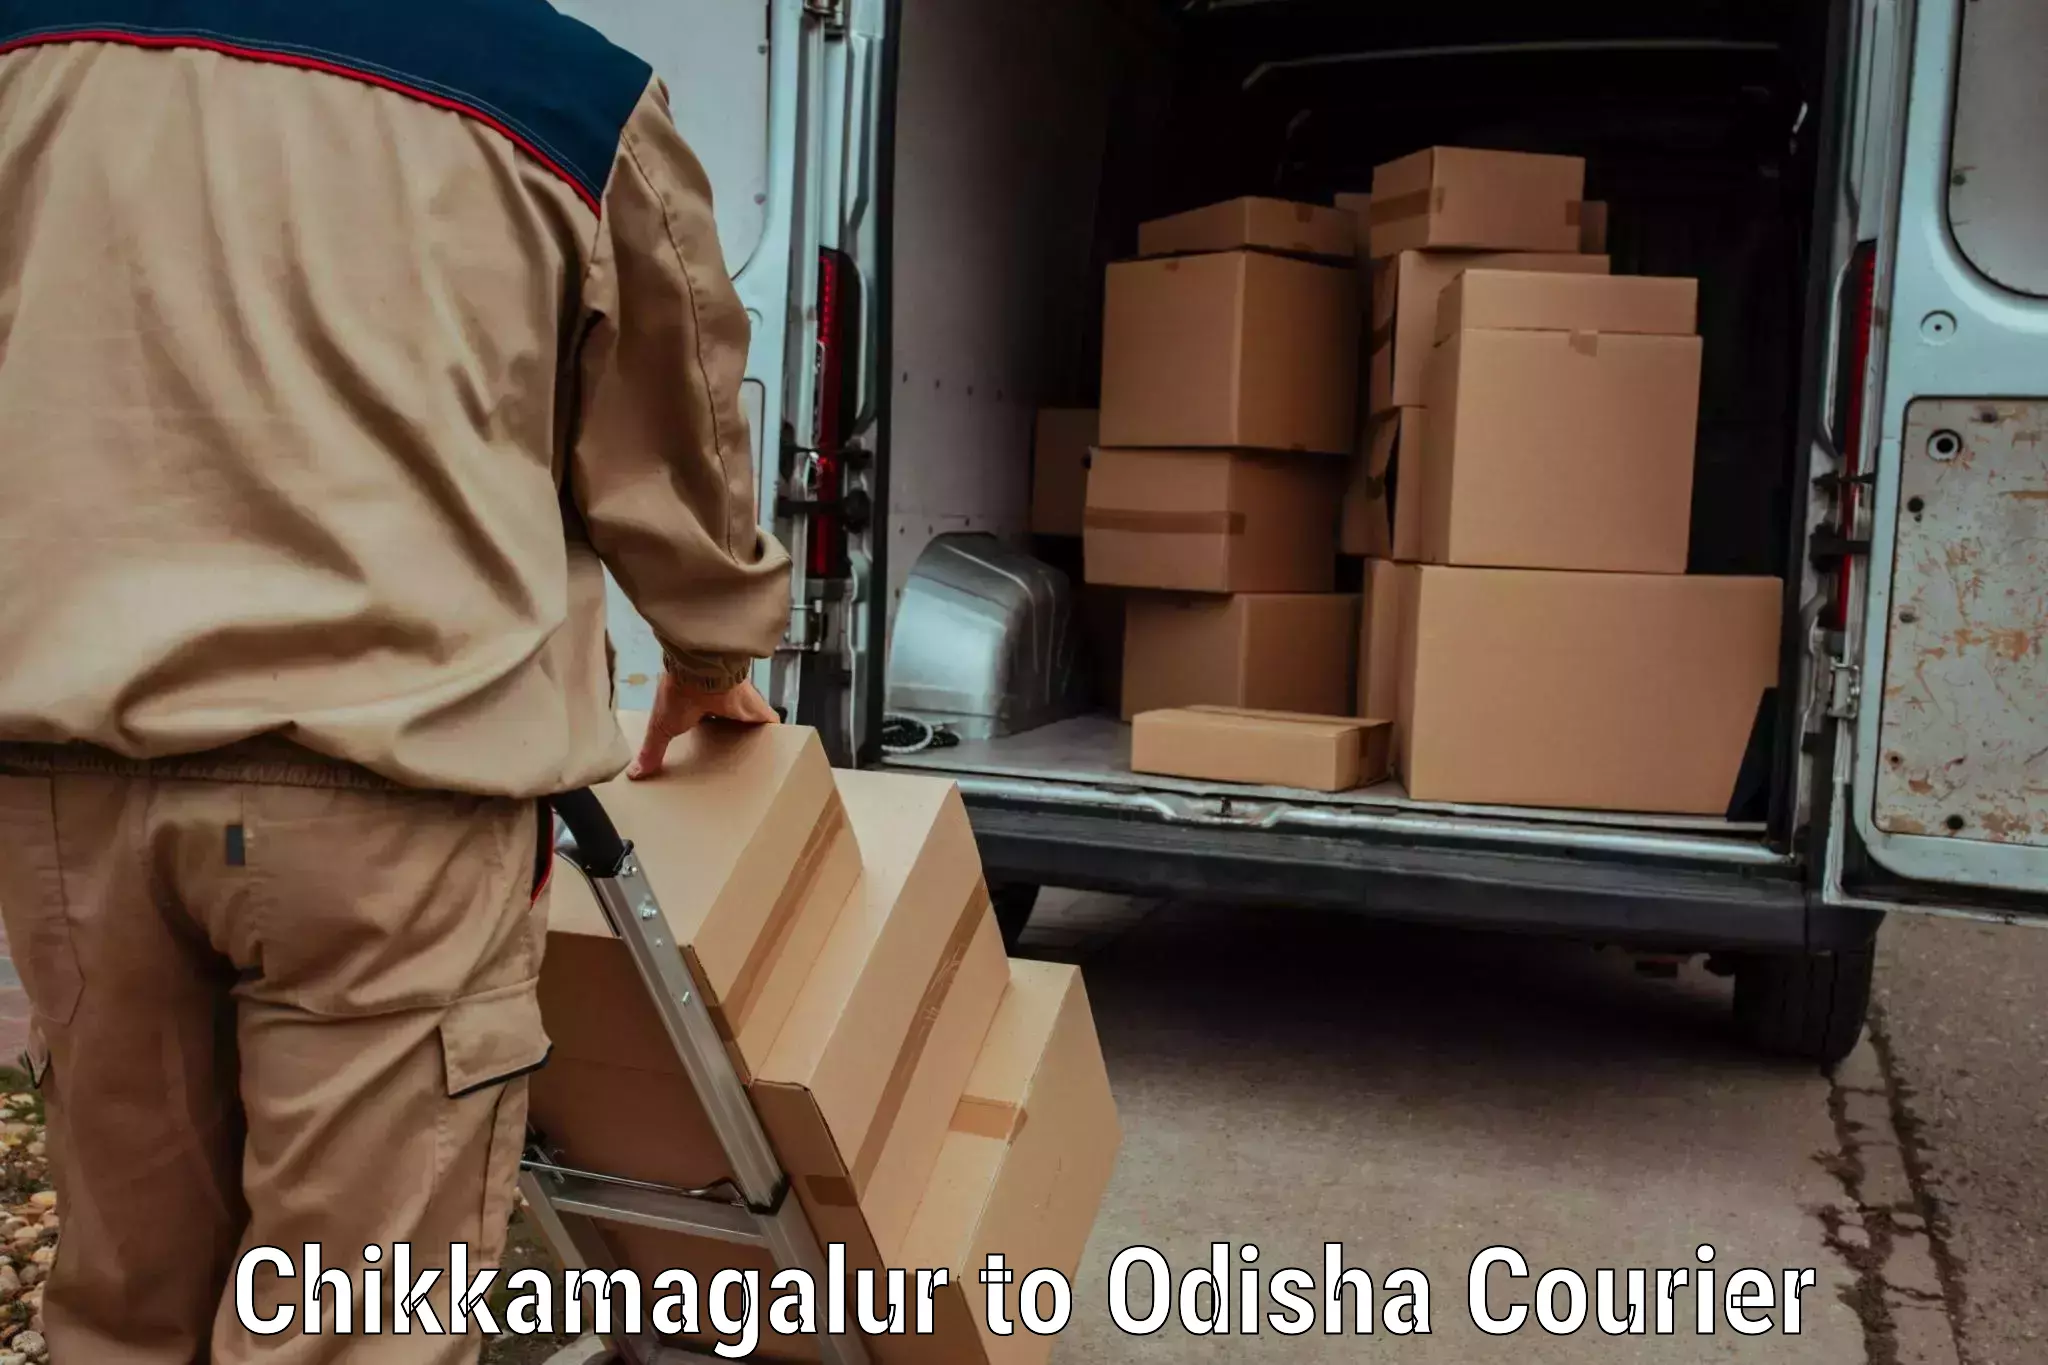 User-friendly courier app Chikkamagalur to Konark